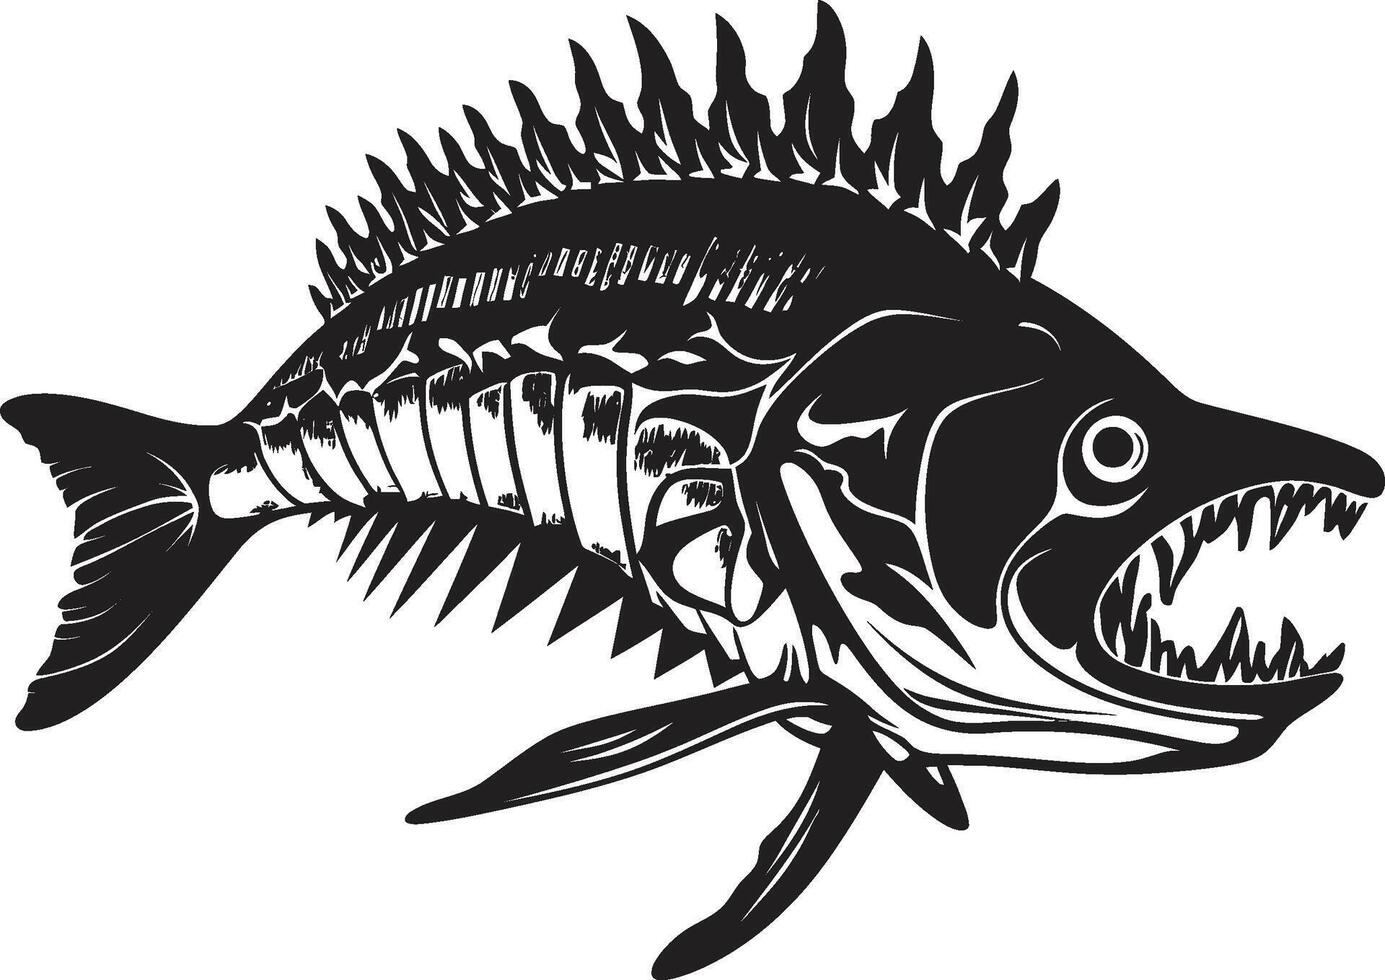 Macabre Morphology Black Logo for Predator Fish Skeleton Emblem Serrated Specter Symbol Black Icon Design for Predator Fish Skeleton vector